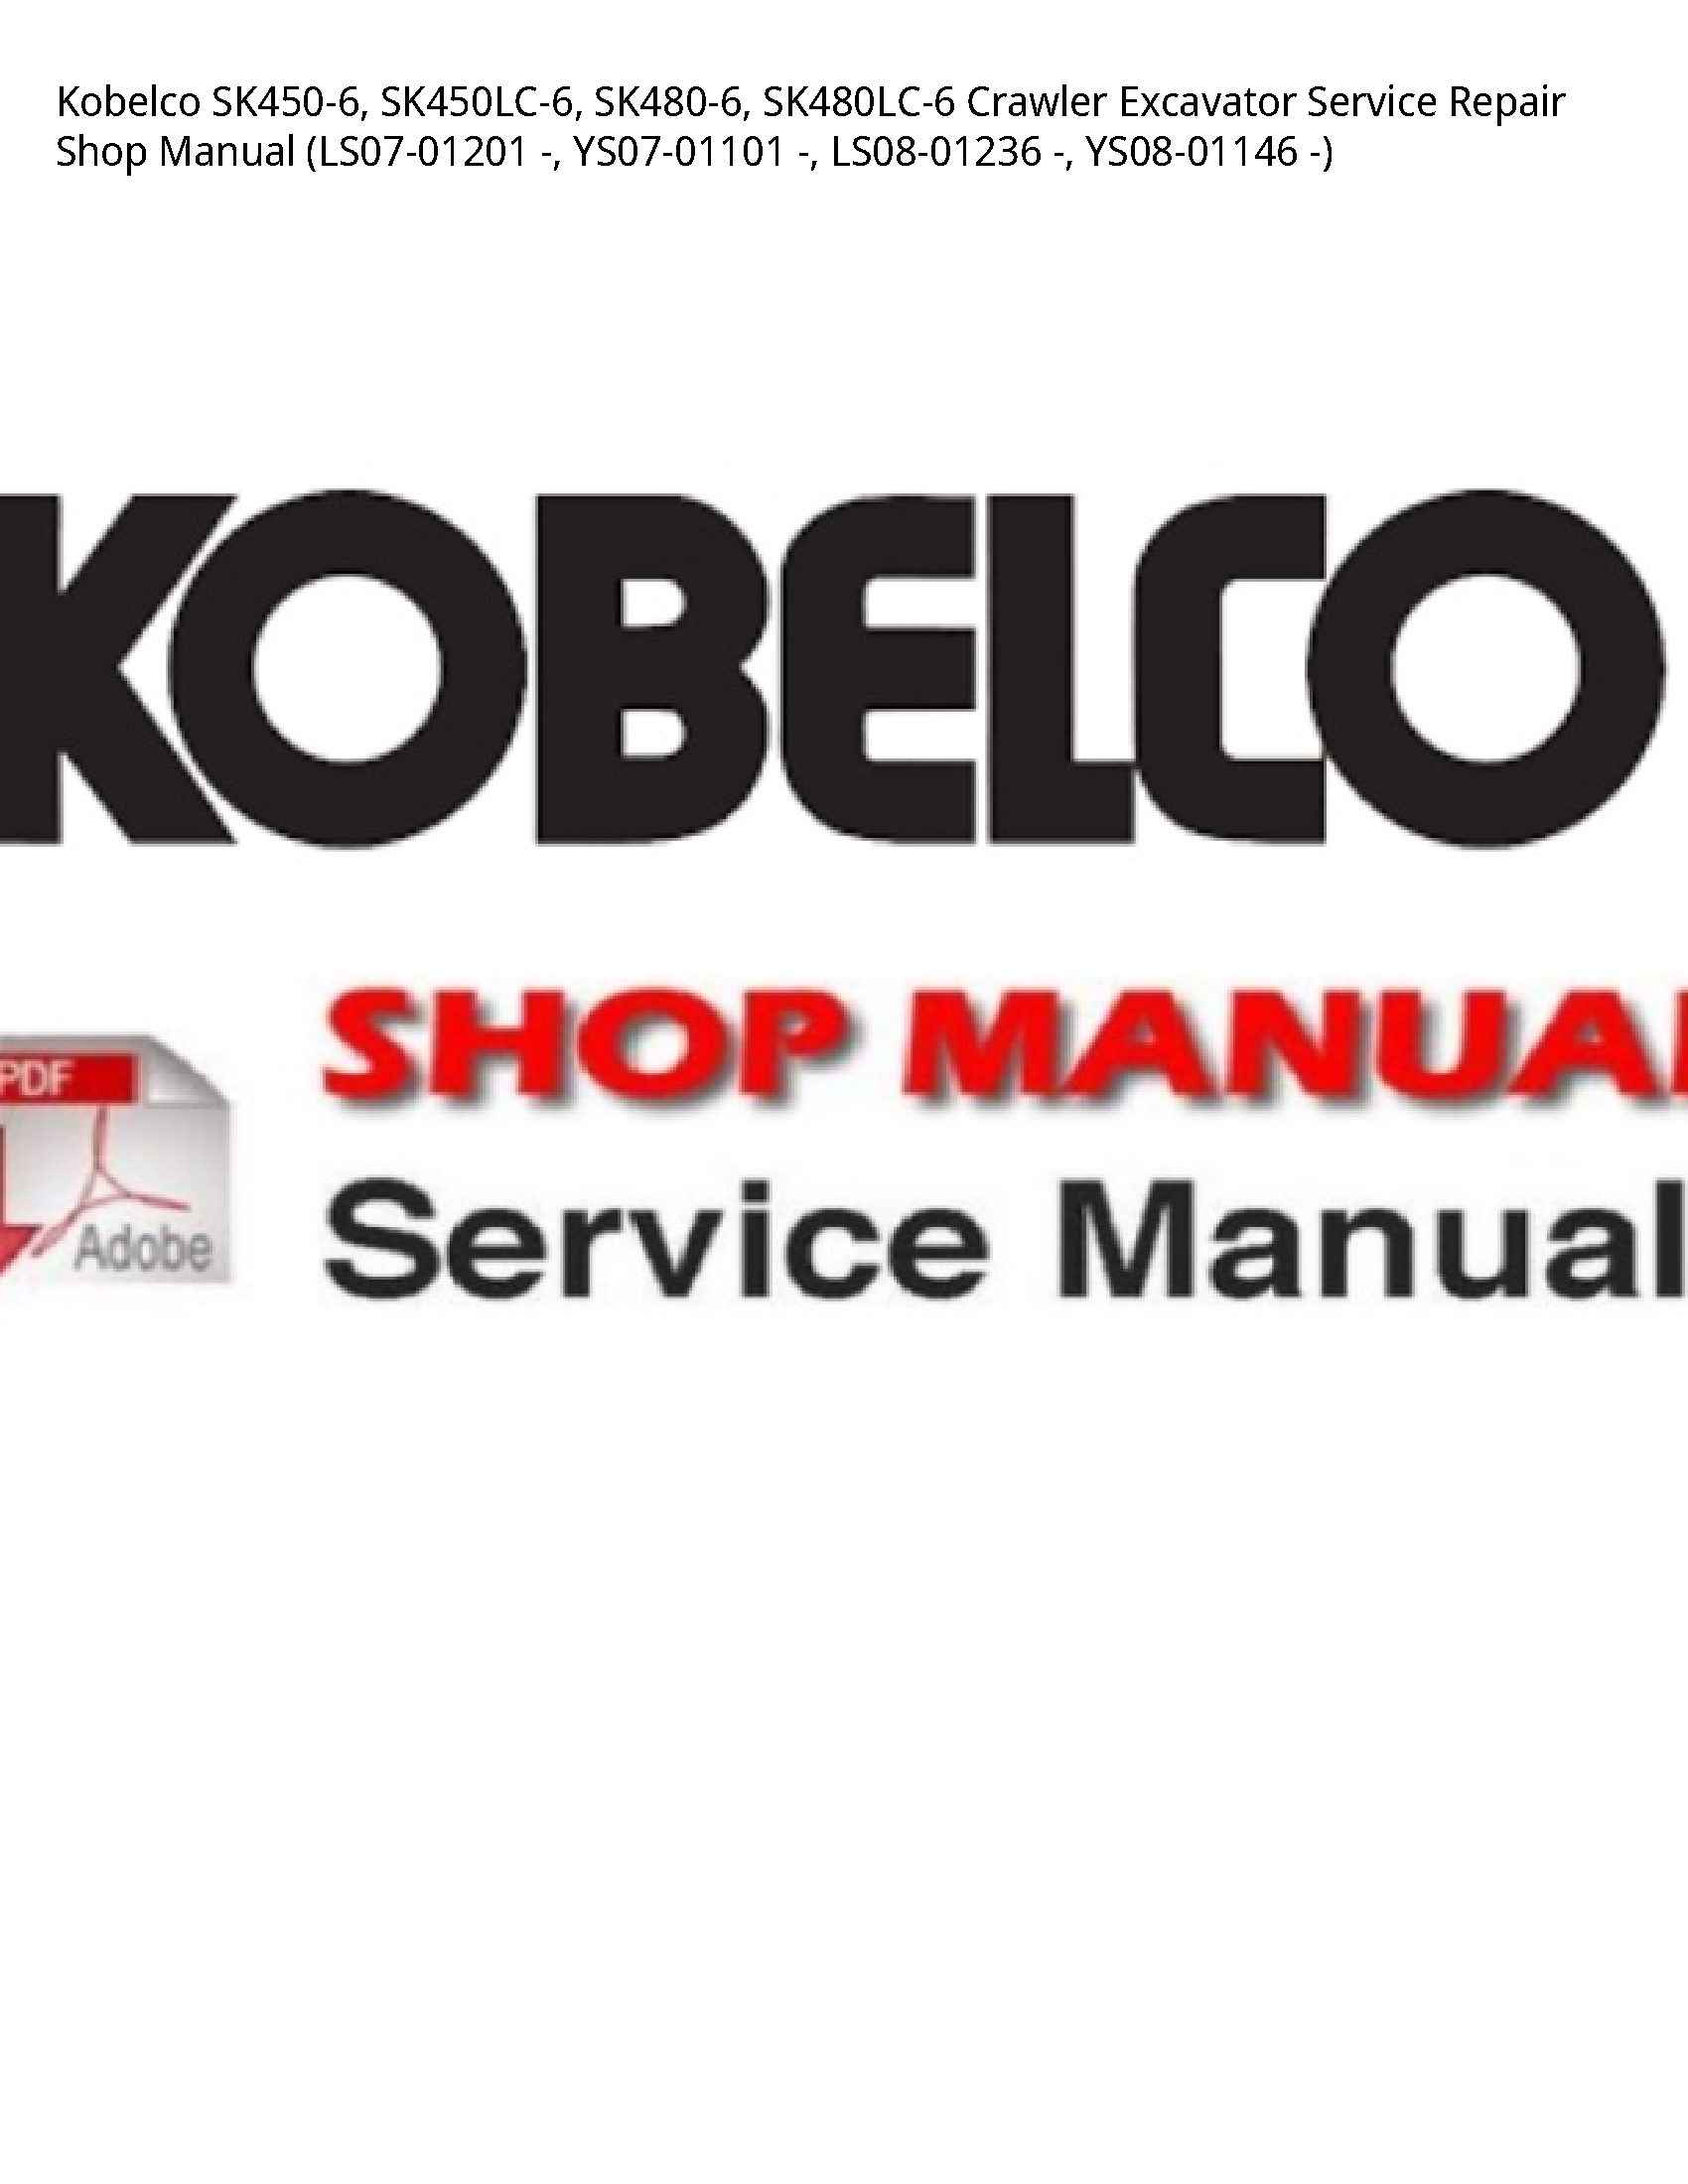 Kobelco SK450-6 Crawler Excavator manual